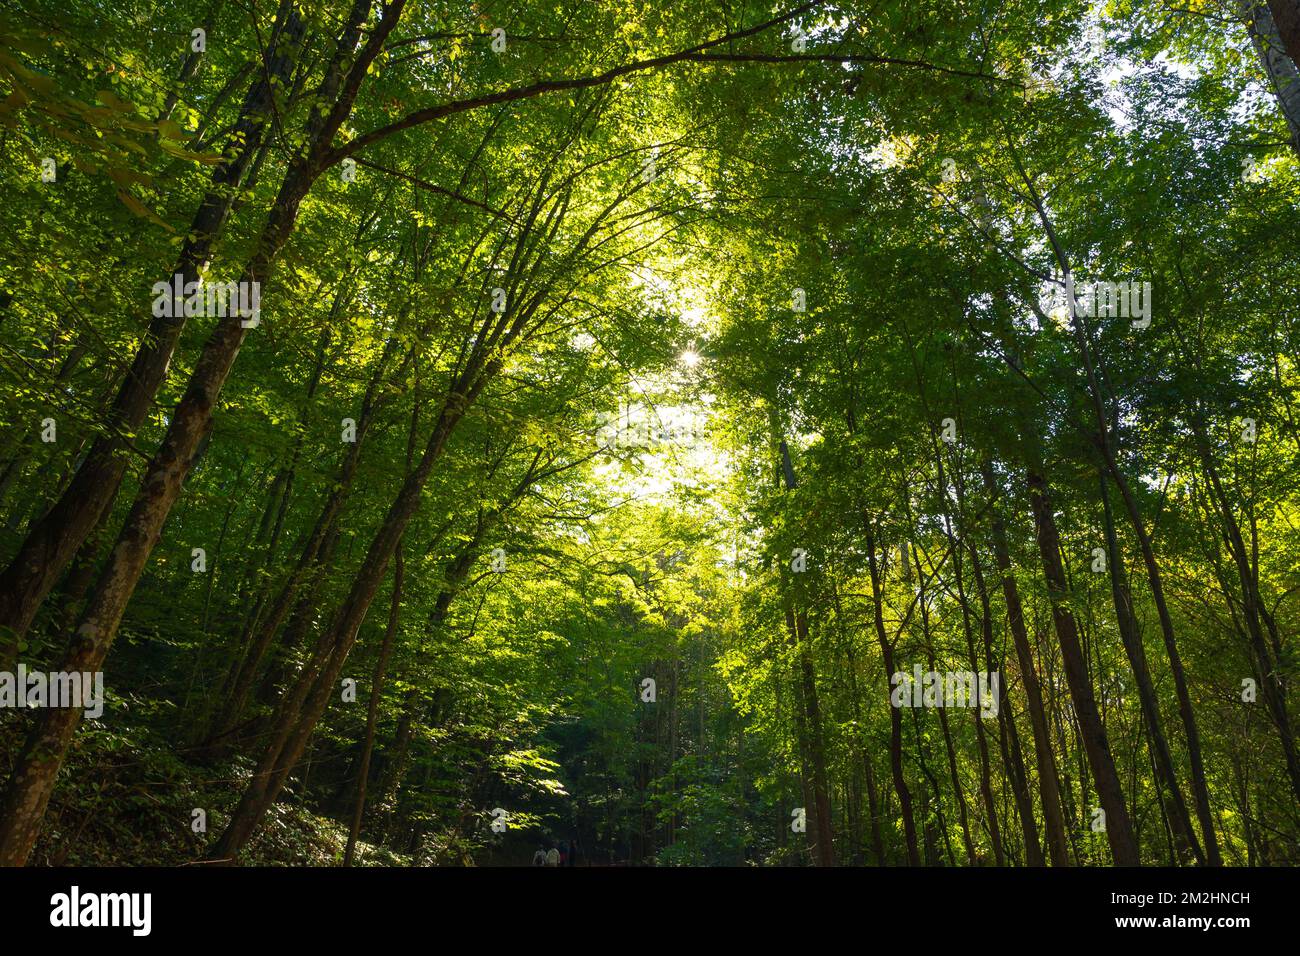 Vista grandangolare di alberi alti nella foresta. Lussureggiante foresta. Earth Day o World Environment Day o Carbon net zero o Carbon neutrality Concept photo. Foto Stock